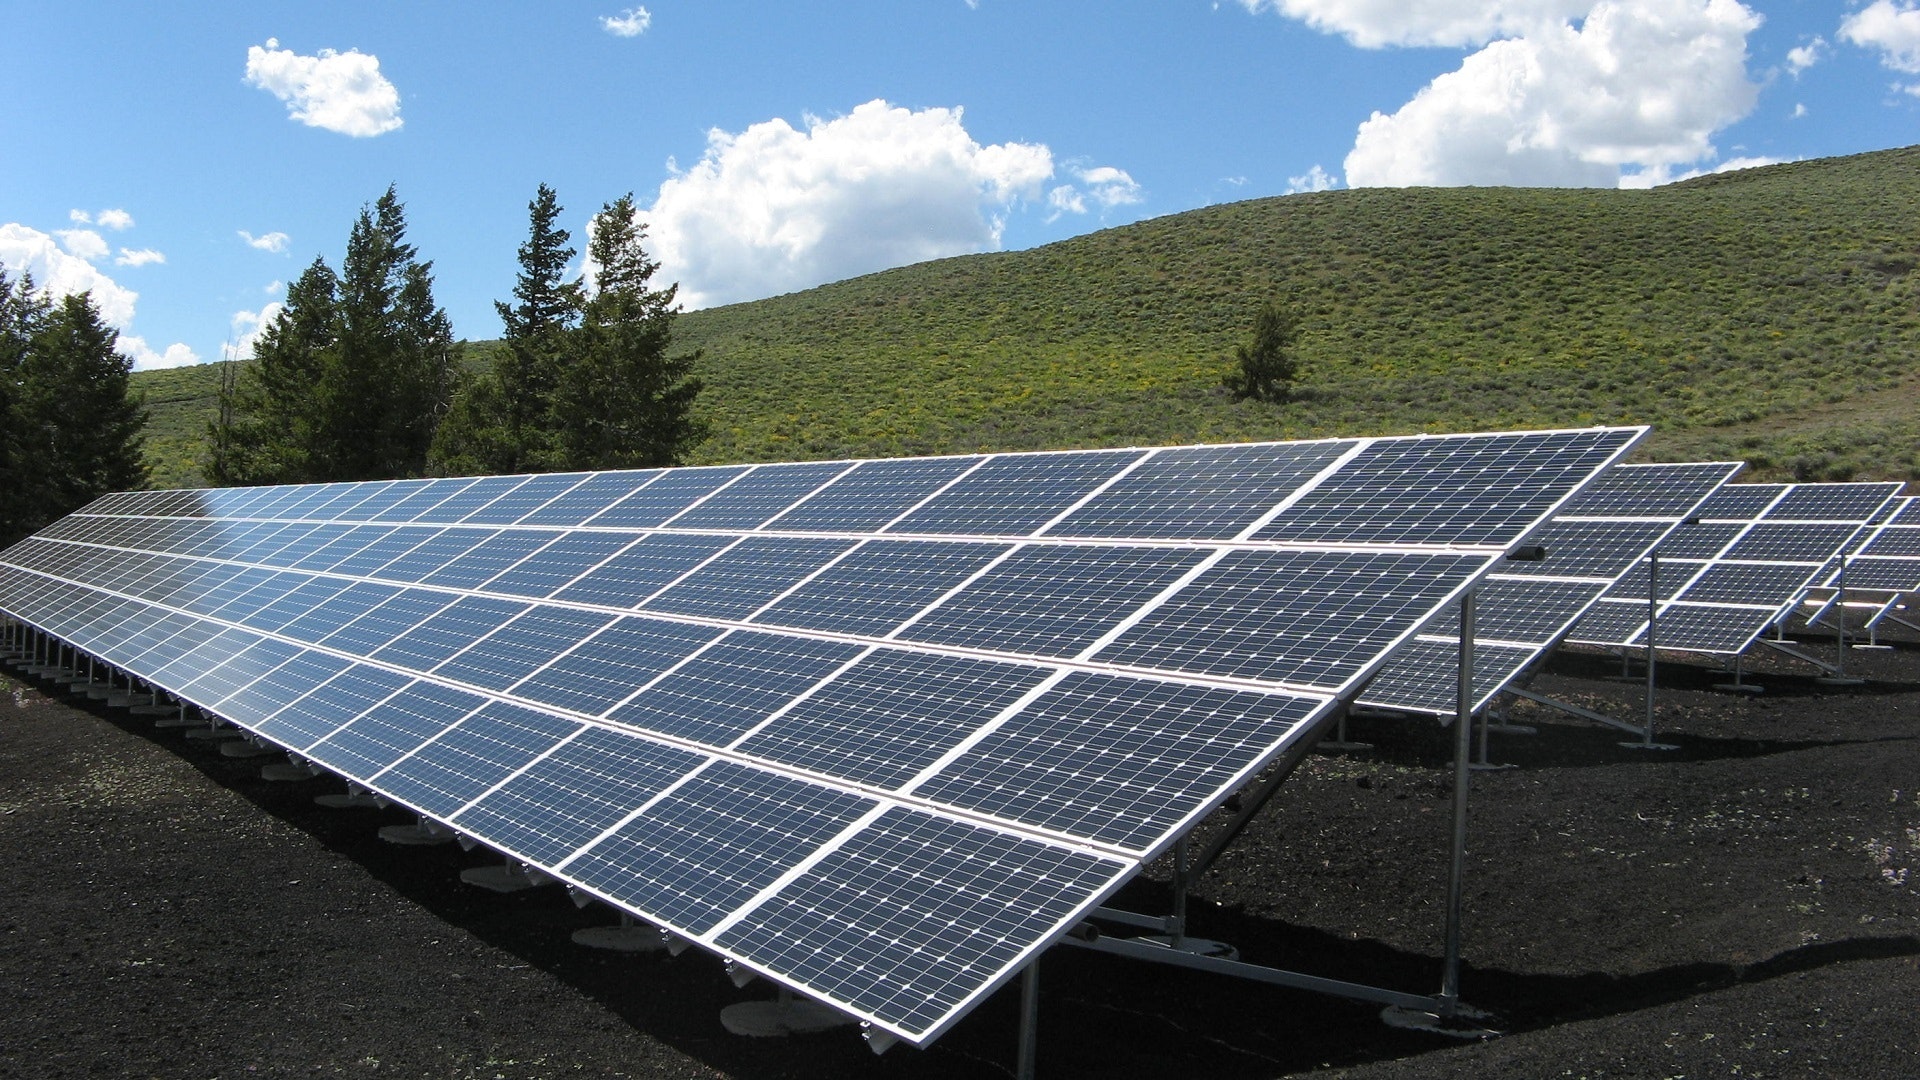 Konkurs: Sufinansiranje projekata primene solarne energije u poljoprivrednim gazdinstvima